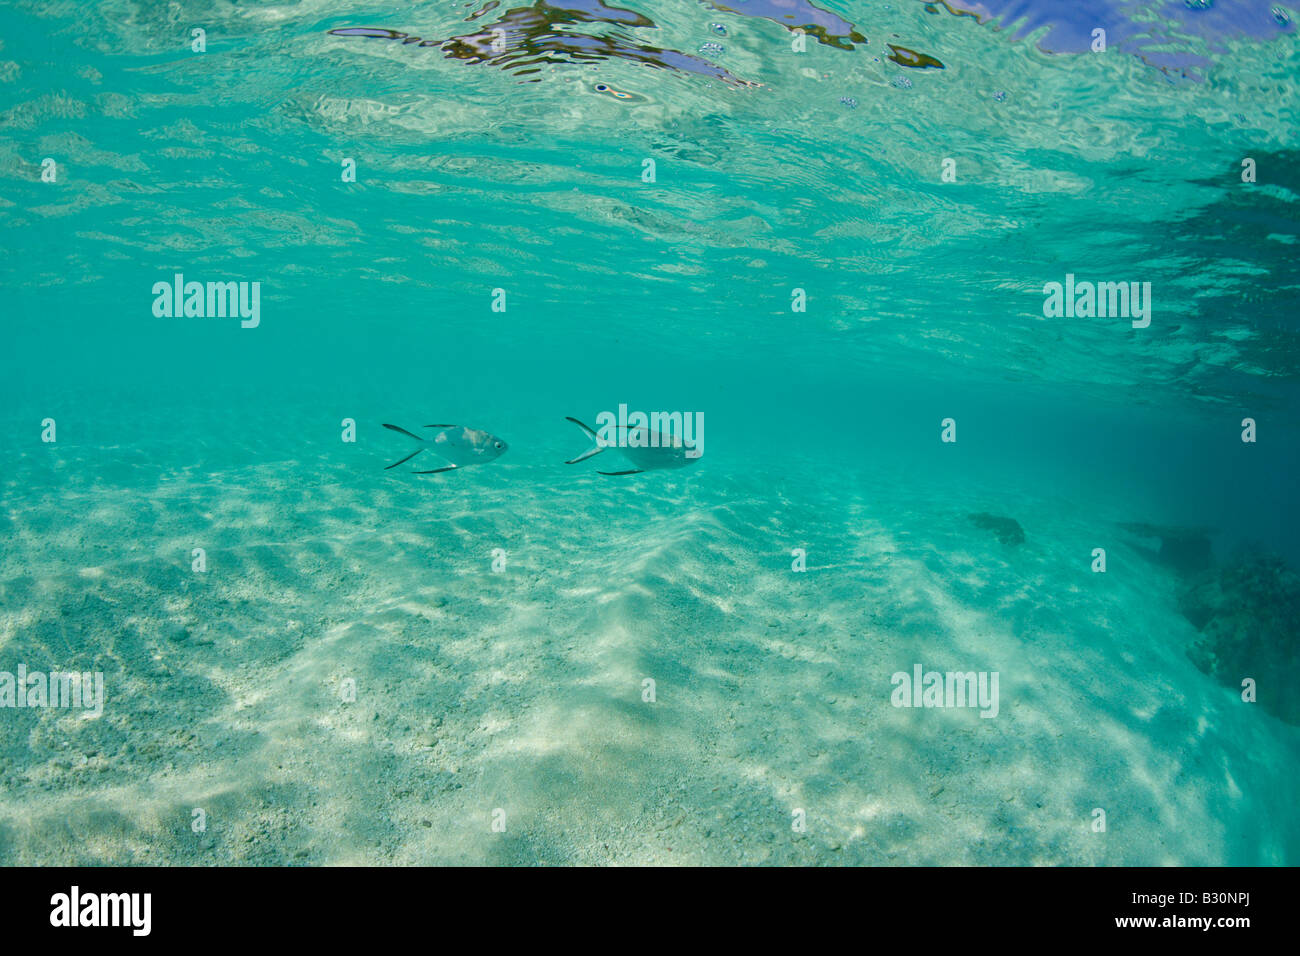 Pompanos in seichten Lagune Trachinotus Bailloni Marshallinseln Bikini Atoll Mikronesien Pazifik gesichtet Stockfoto